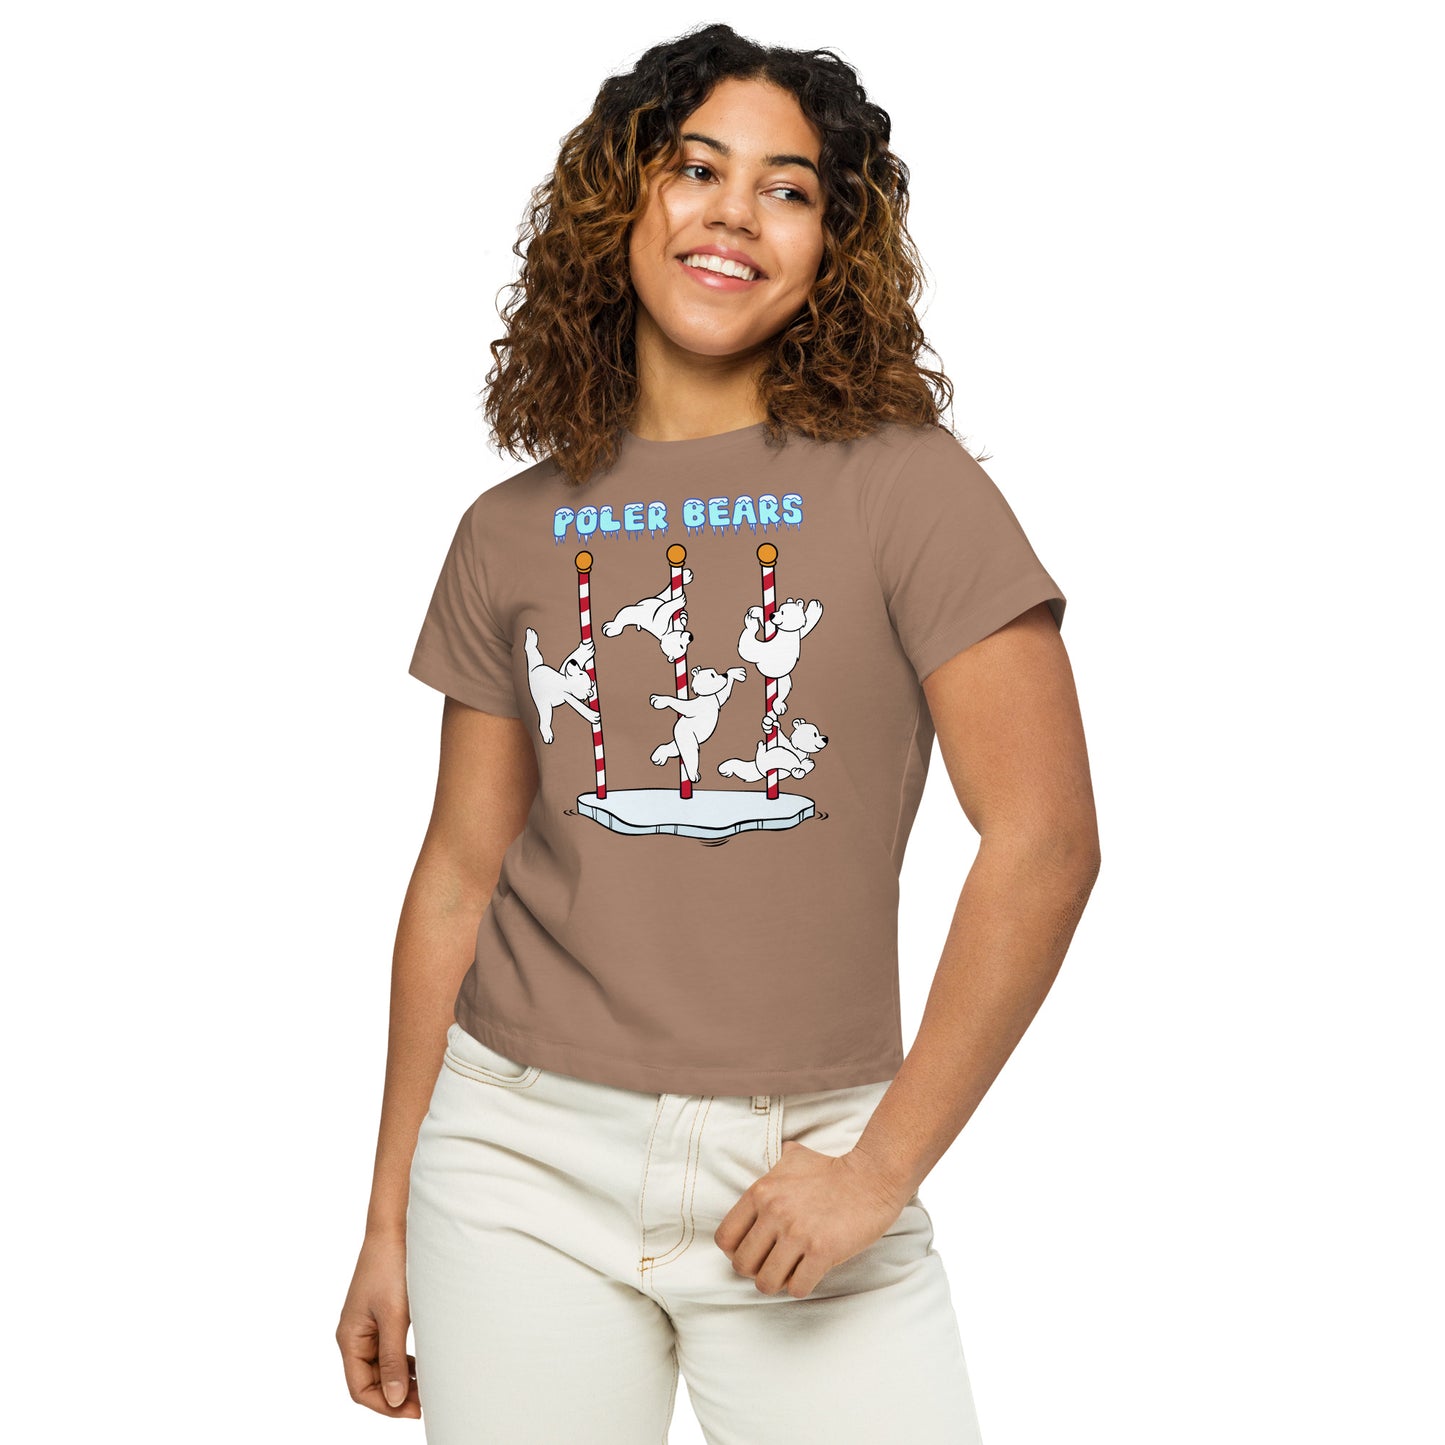 Poler Bears - Women’s high-waisted t-shirt